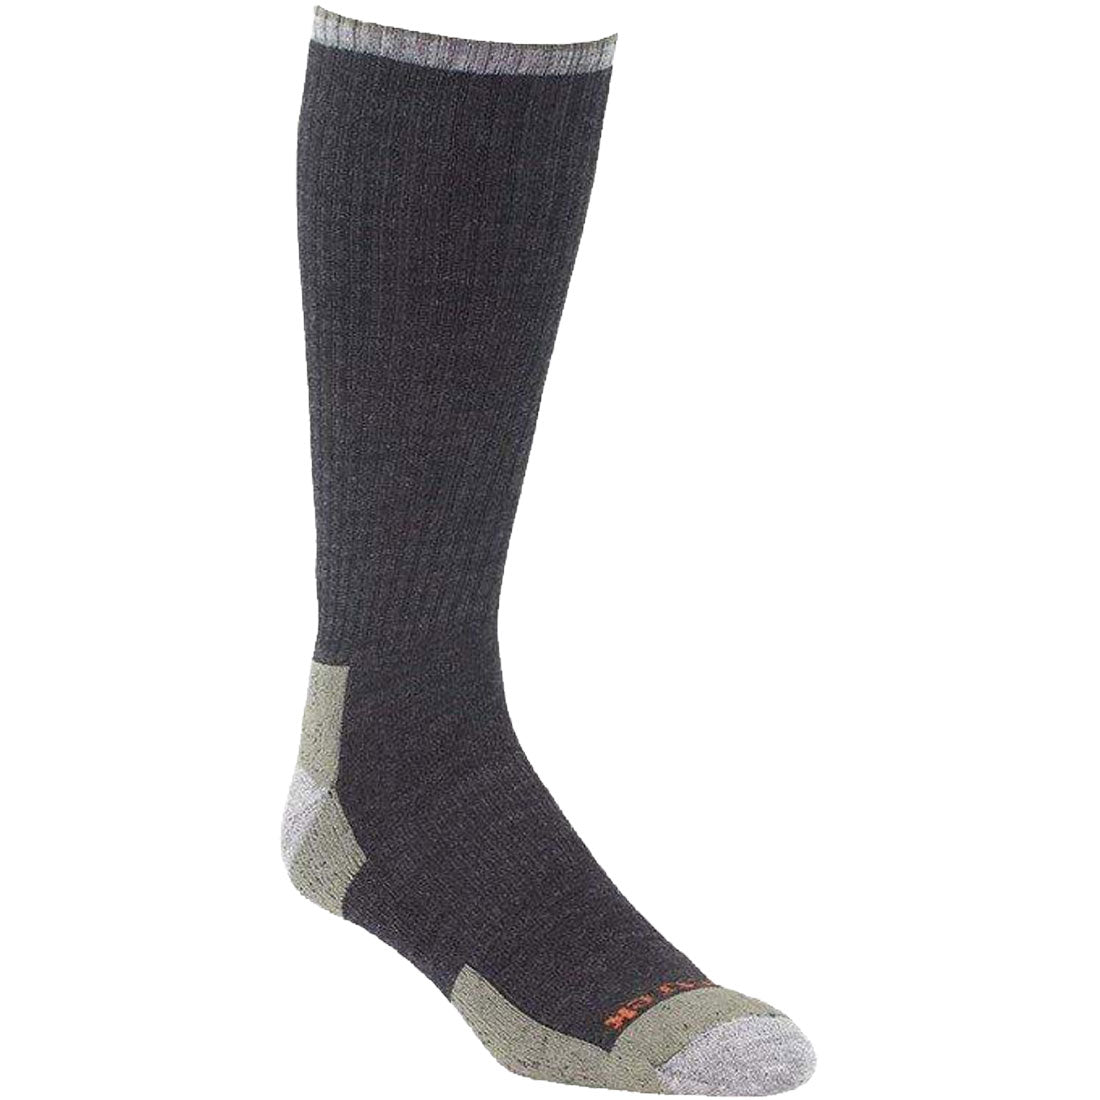 Kenetrek Yellowstone Lightweight Boot Sock